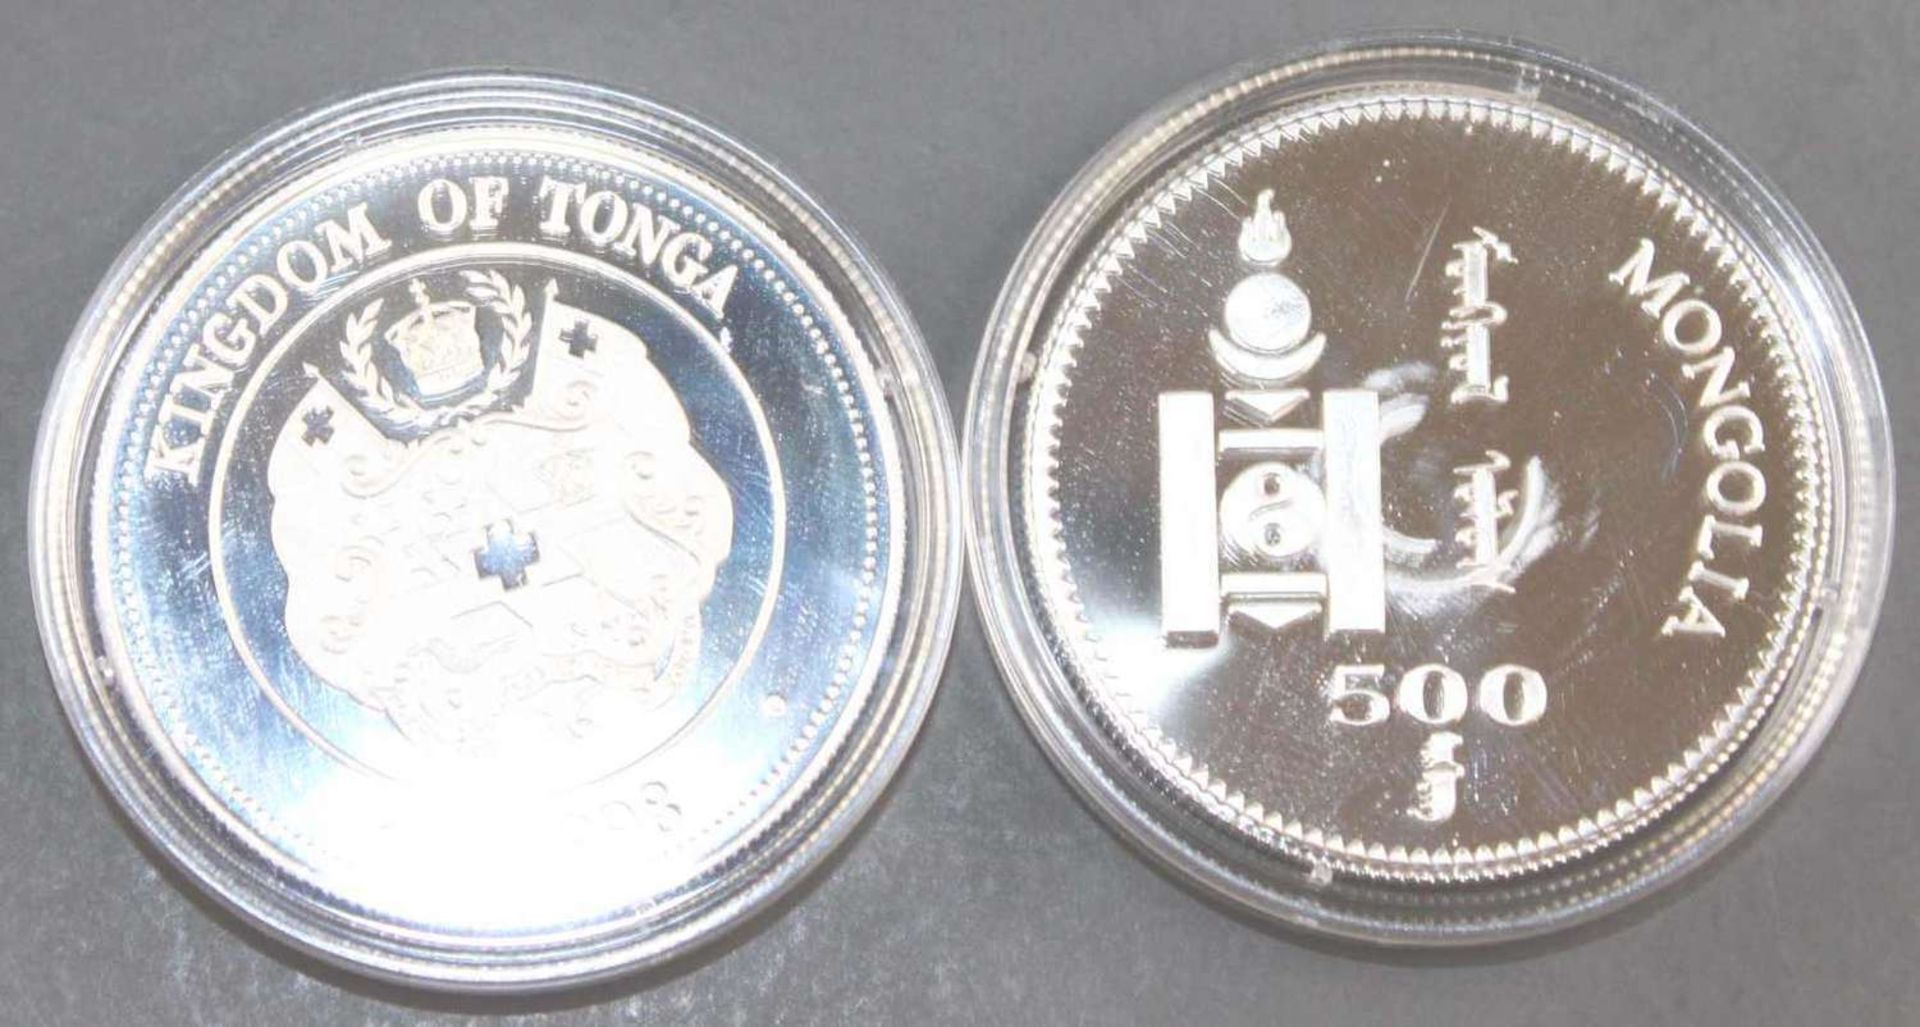 Mongolei / Tonga 1998, 1 x 500 Tukhrik - Silbermünze "OLympische Spiele". Silber 925. Gewicht: 15 g. - Bild 2 aus 2